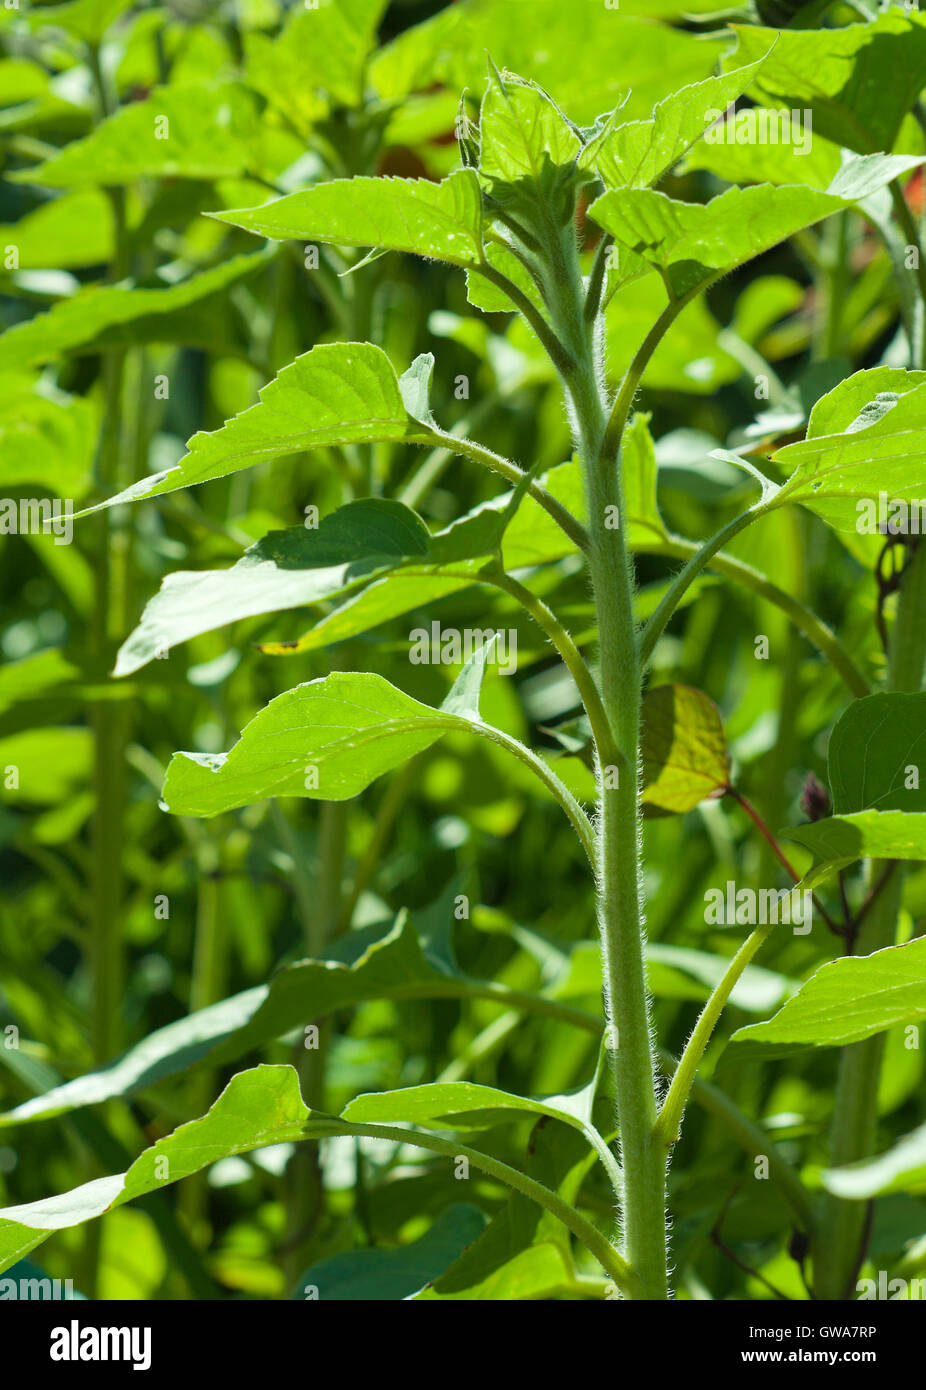 Ambientali naturali molla verde Immagine: giovane germoglio di girasole con sfondo verde di altre piante e fiori Foto Stock